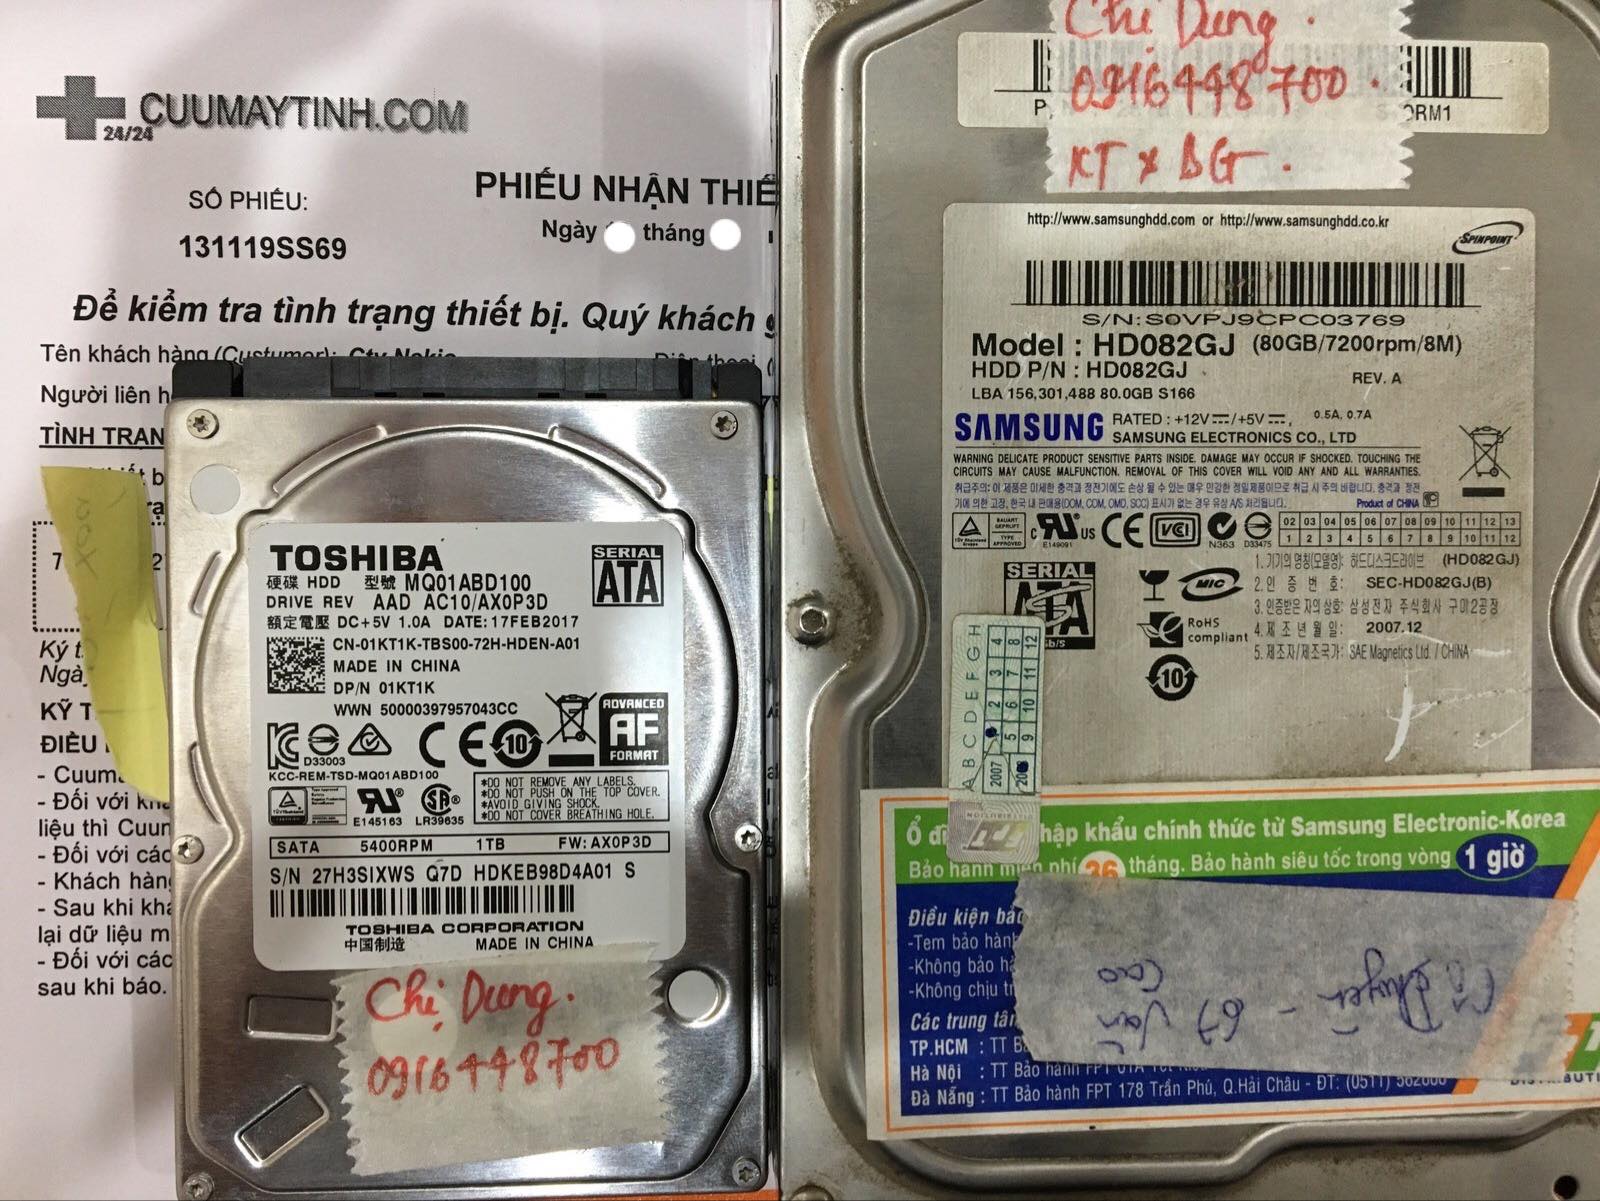 Lấy dữ liệu ổ cứng Samsung 80GB lỗi đầu đọc 03/12/2019 - cuumaytinh